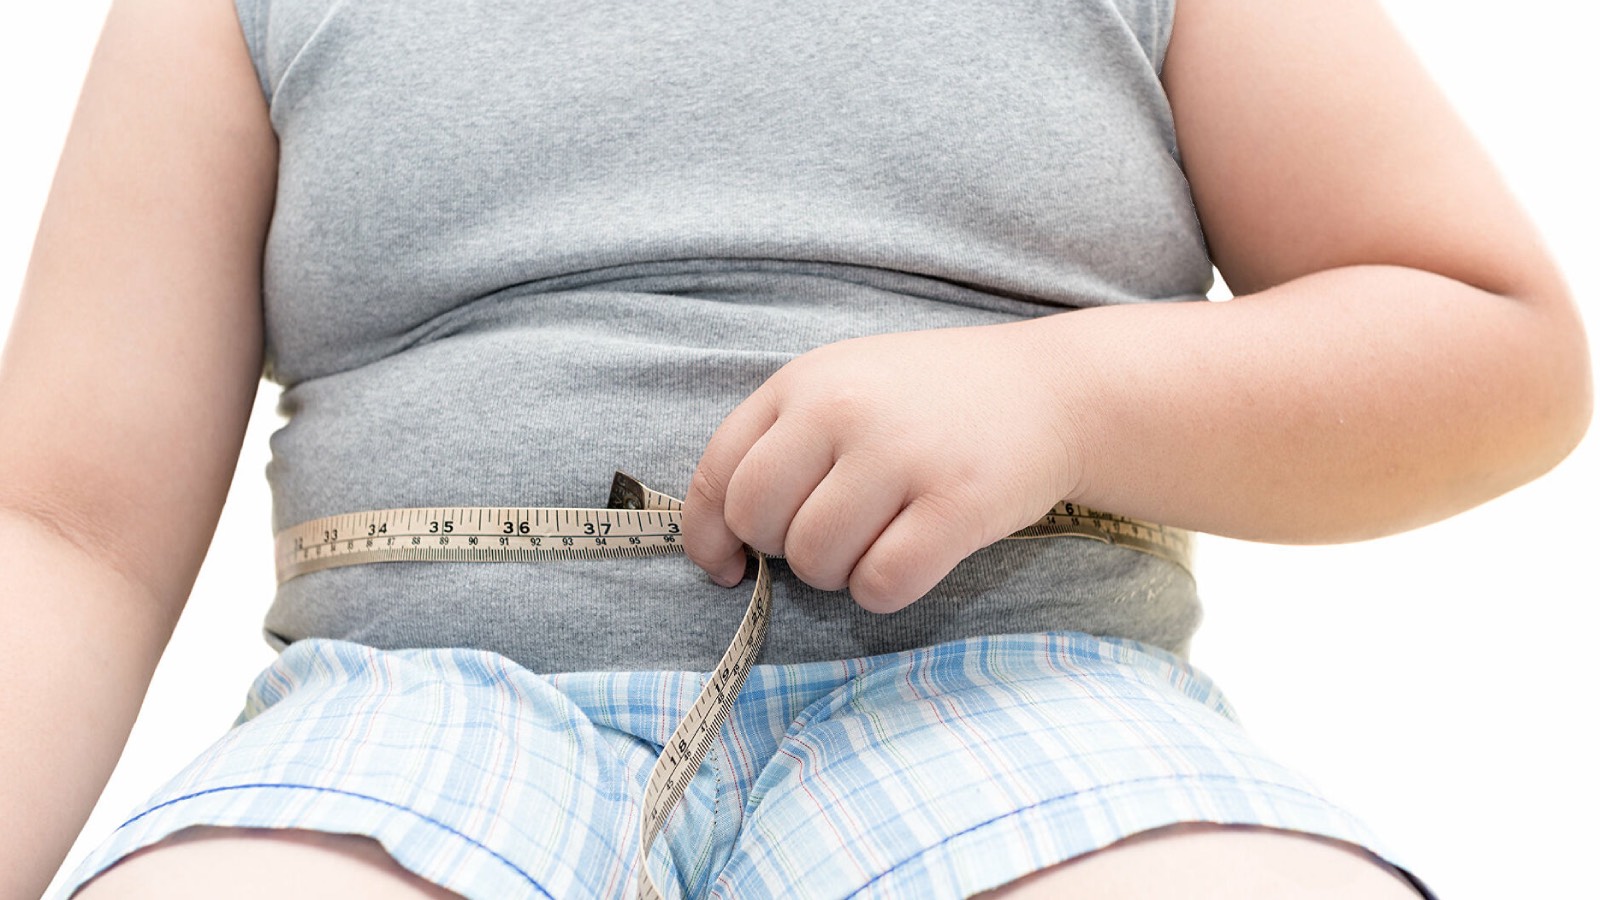 Fast food çocuklarda obeziteye neden oluyor! Çocuklarda obezite nedir?